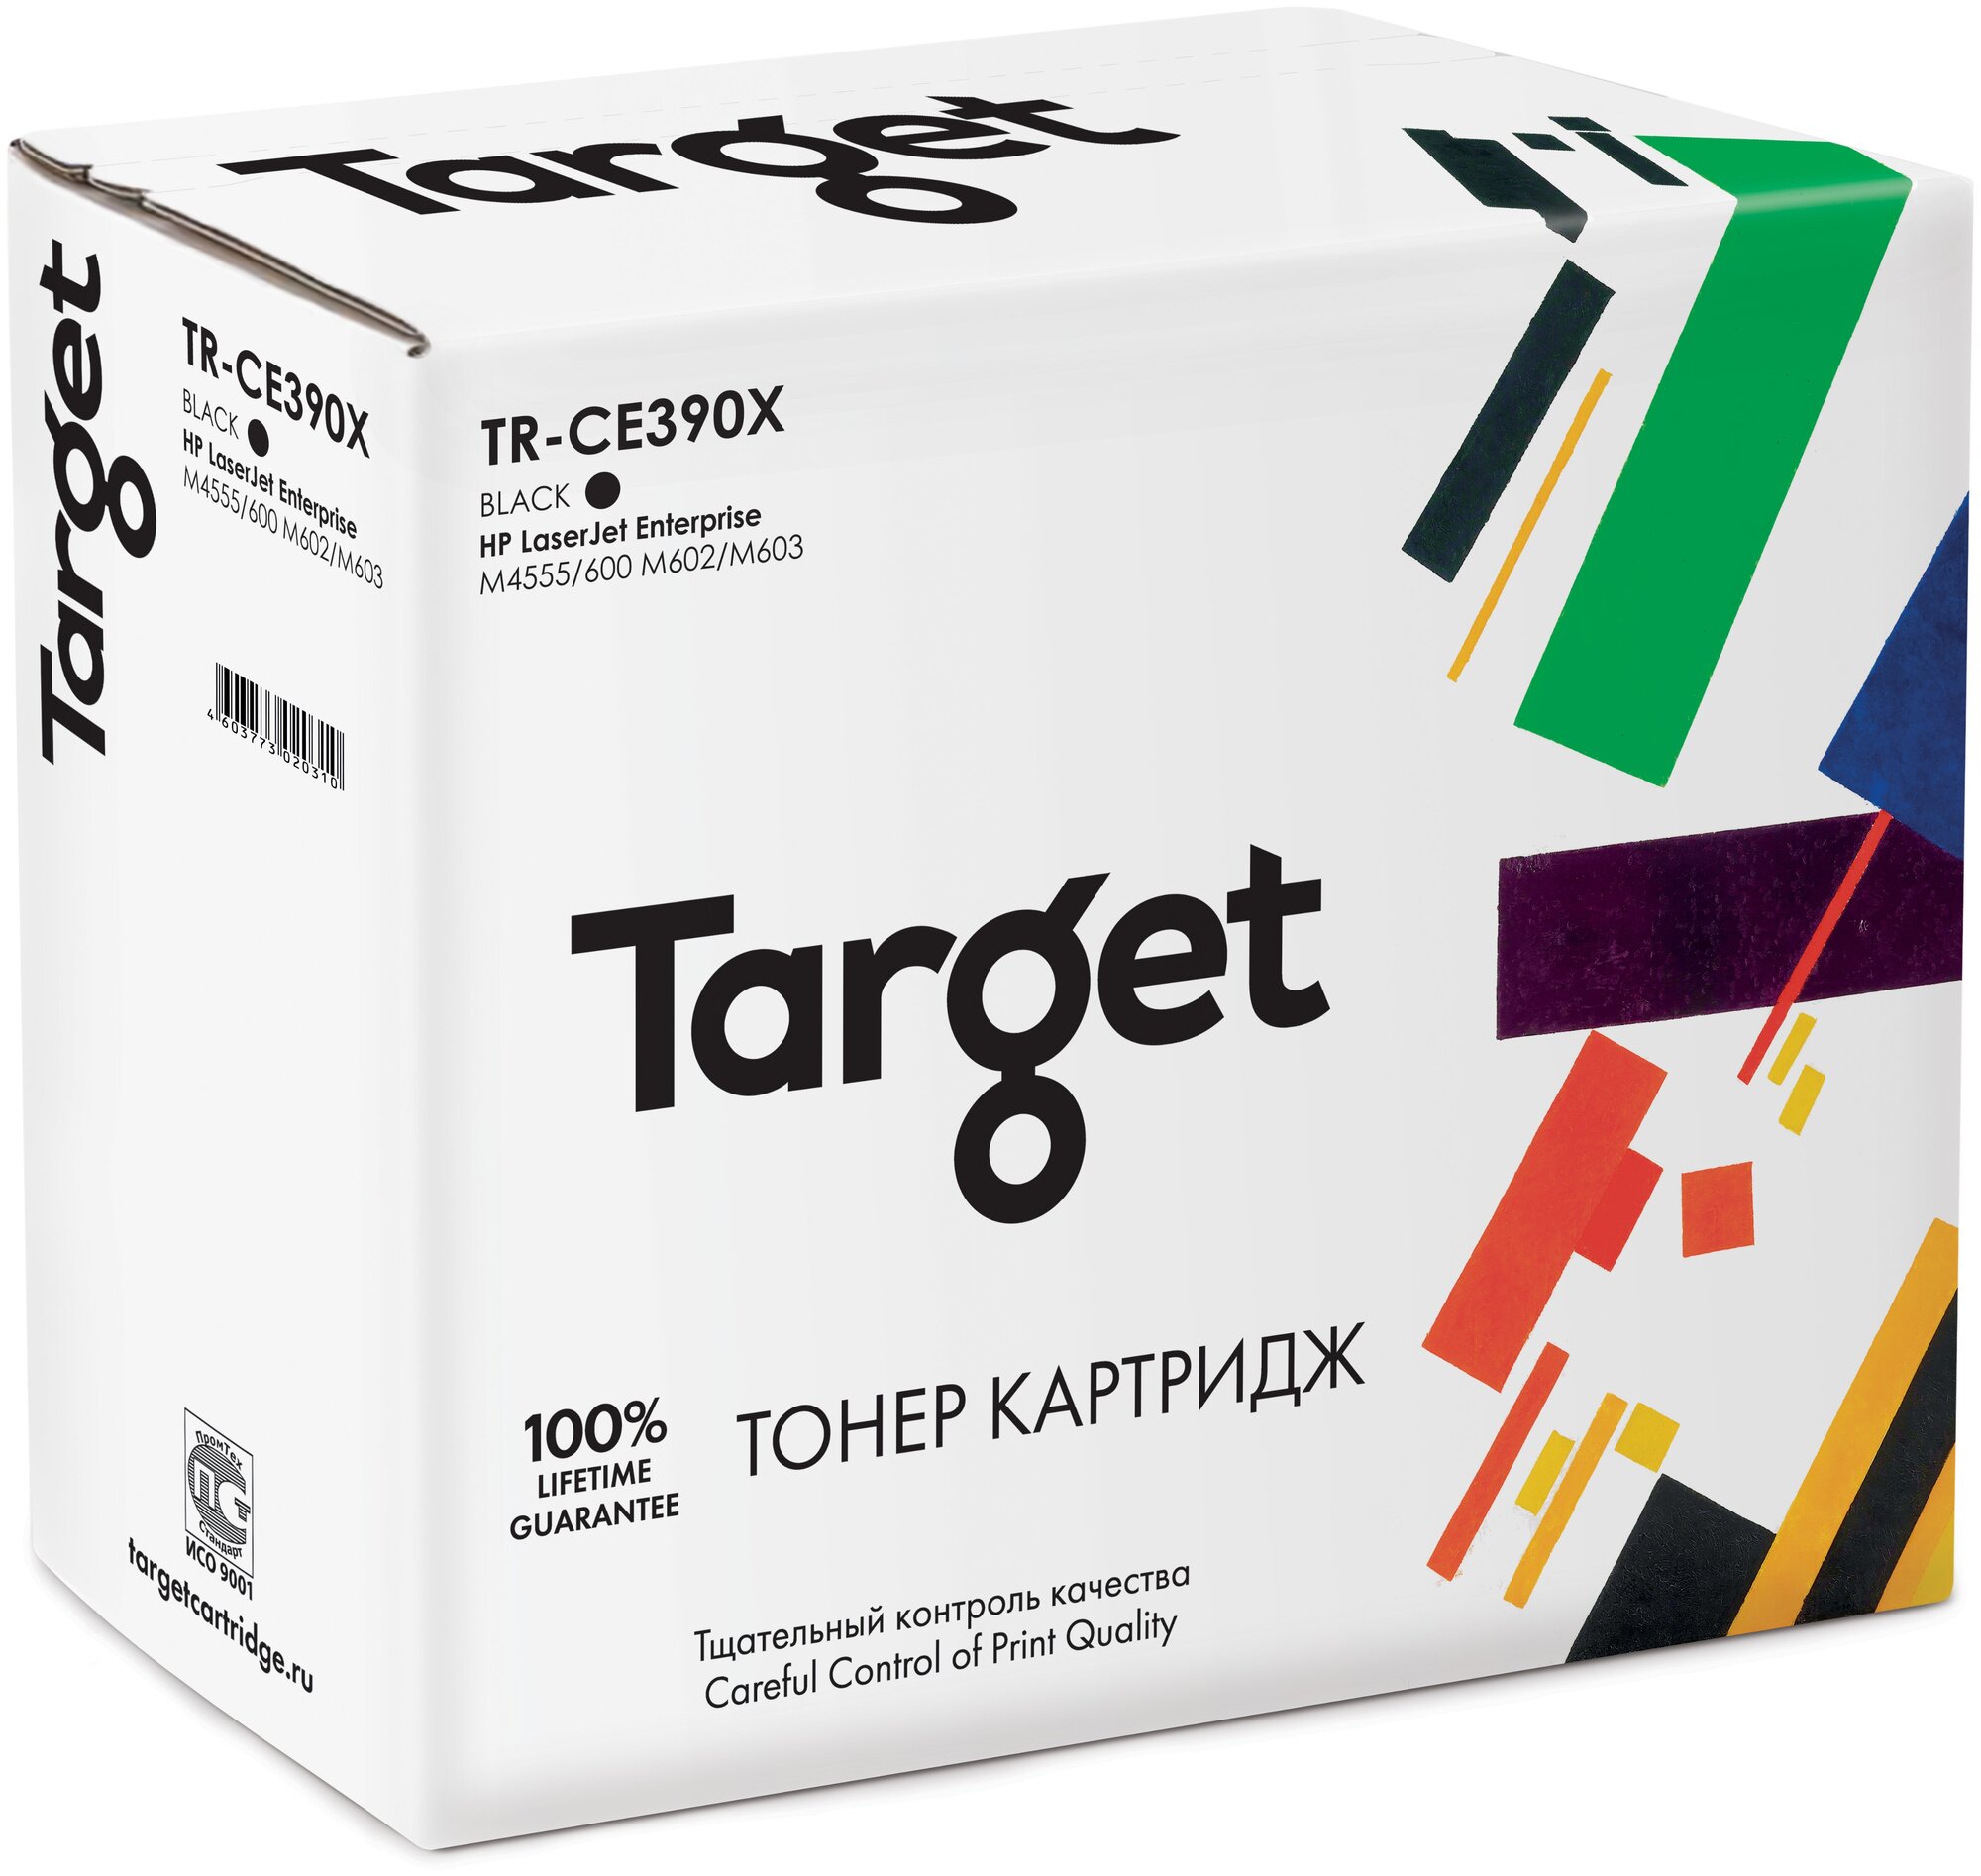 Картридж Target CE390X, черный, для лазерного принтера, совместимый